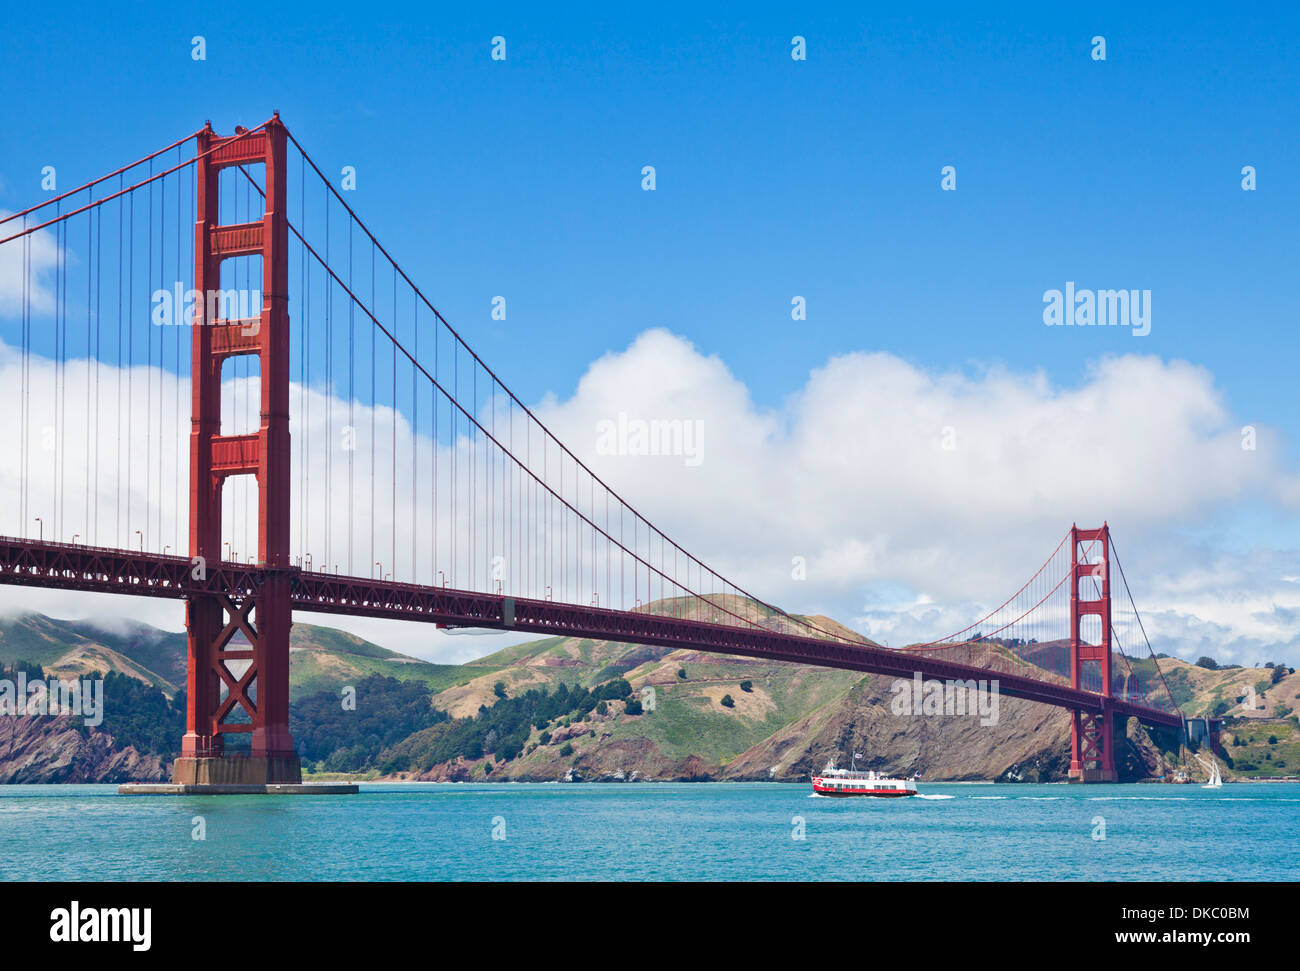 Ausflugsschiff und Golden Gate Bridge in San Francisco Tag Verknüpfung von Marin County mit der Stadt San Francisco Kalifornien USA Stockfoto